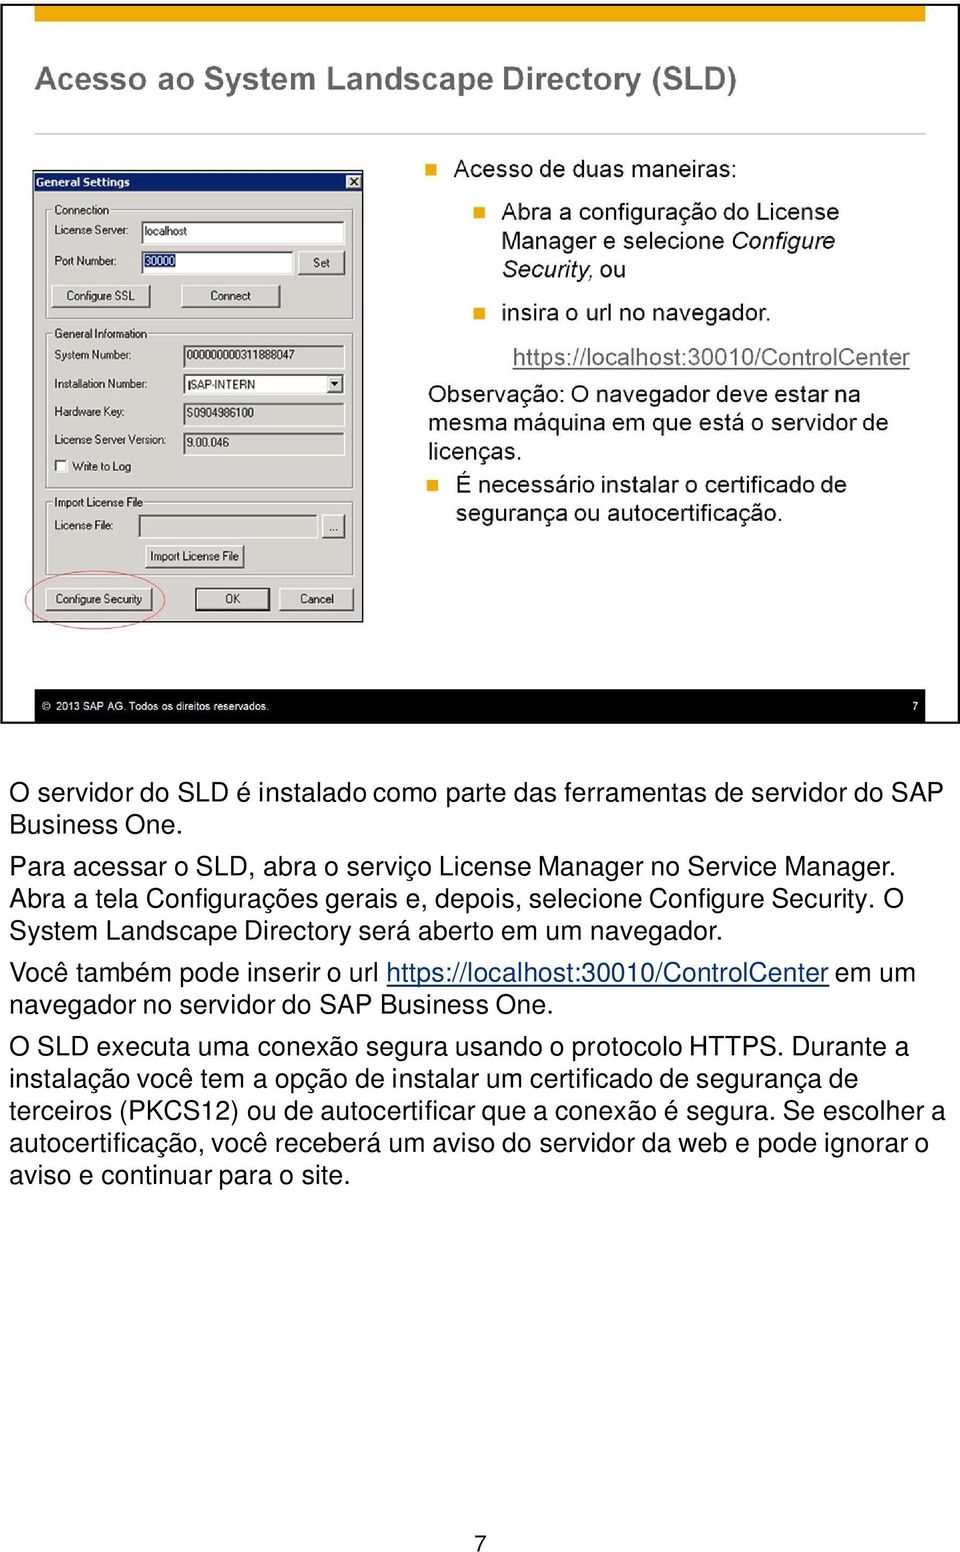 Você também pode inserir o url https://localhost:30010/controlcenter em um navegador no servidor do SAP Business One. O SLD executa uma conexão segura usando o protocolo HTTPS.